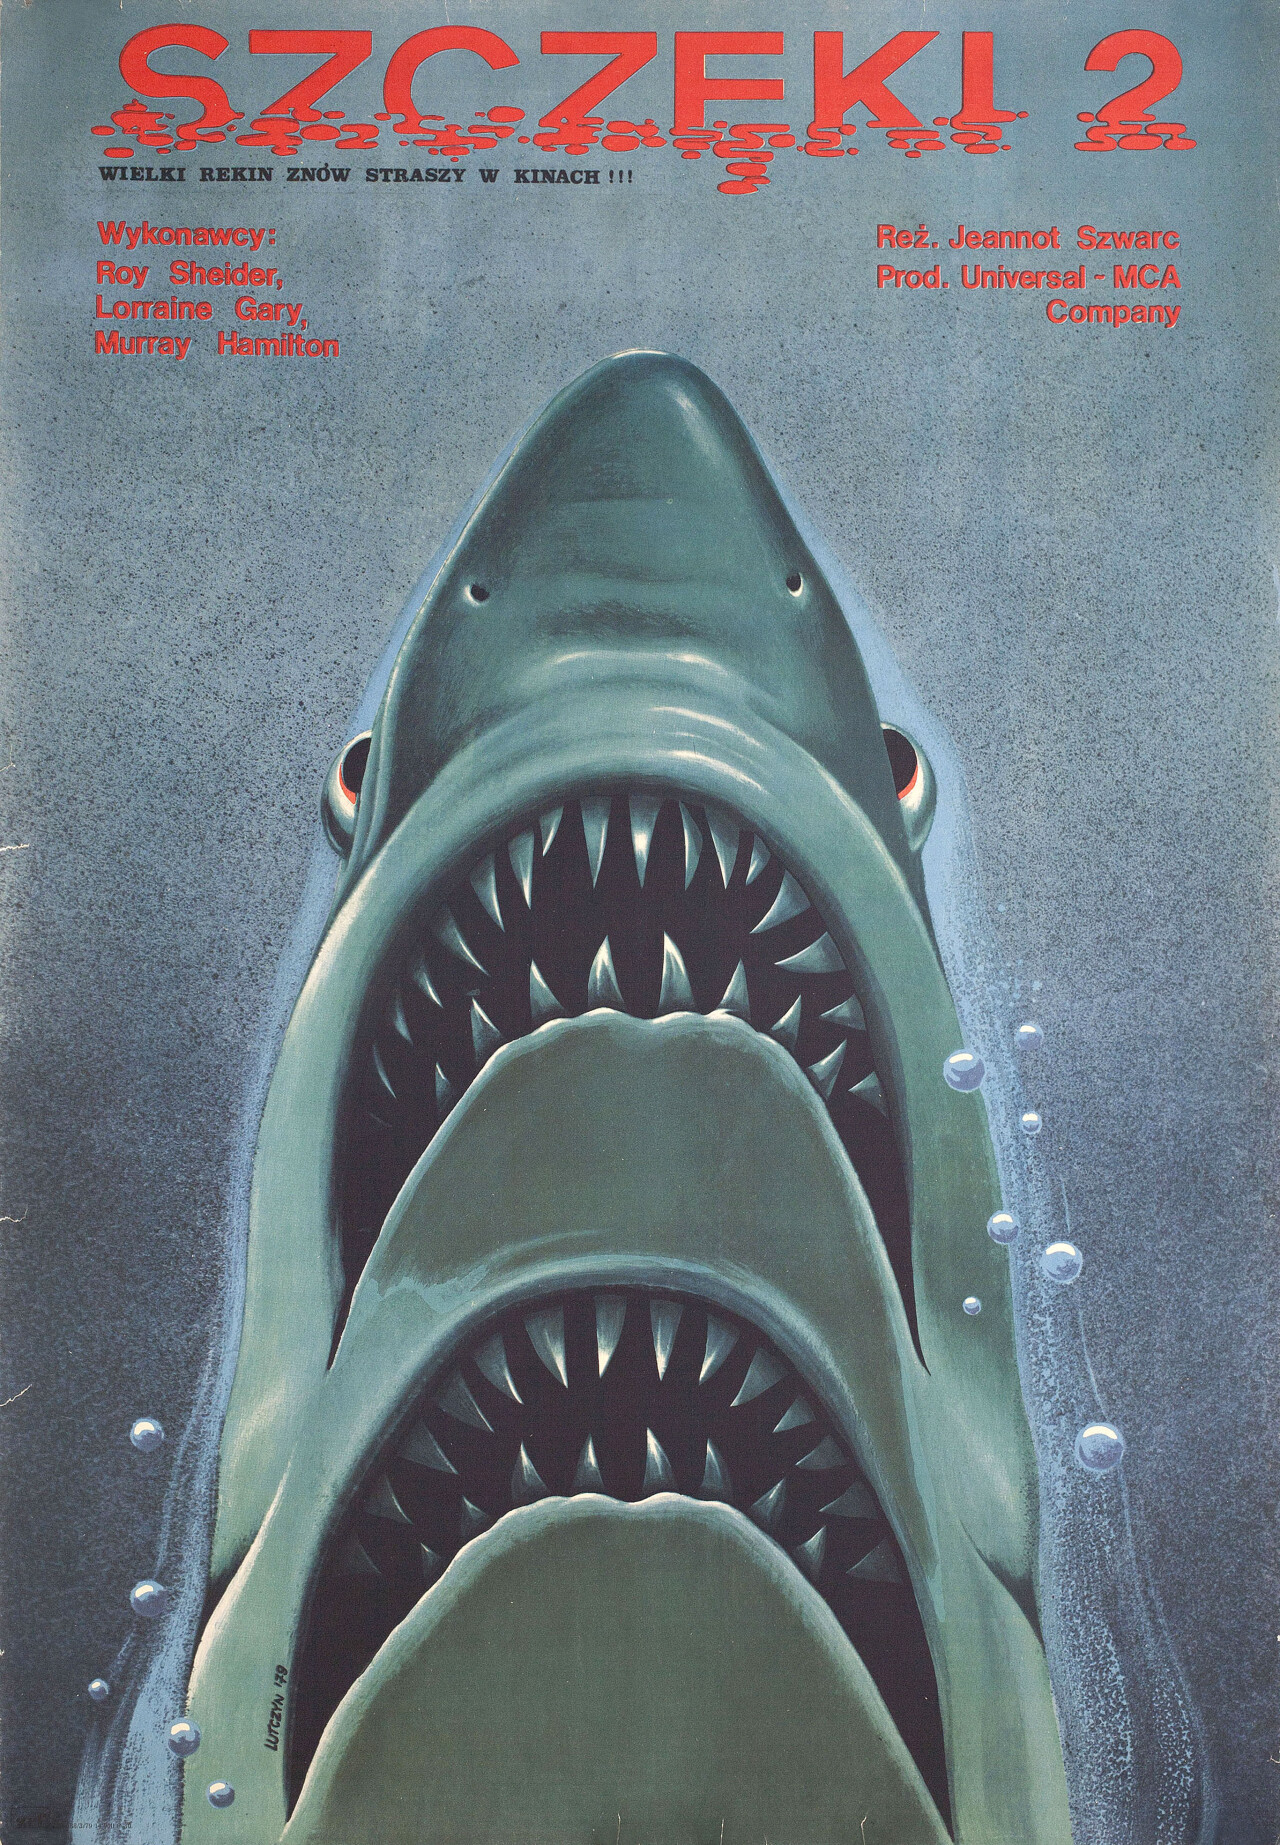 Челюсти 2 (Jaws 2, 1978), режиссёр Жанно Шварц, польский постер к фильму, автор Эдвард Лучин (графический дизайн, 1979 год)